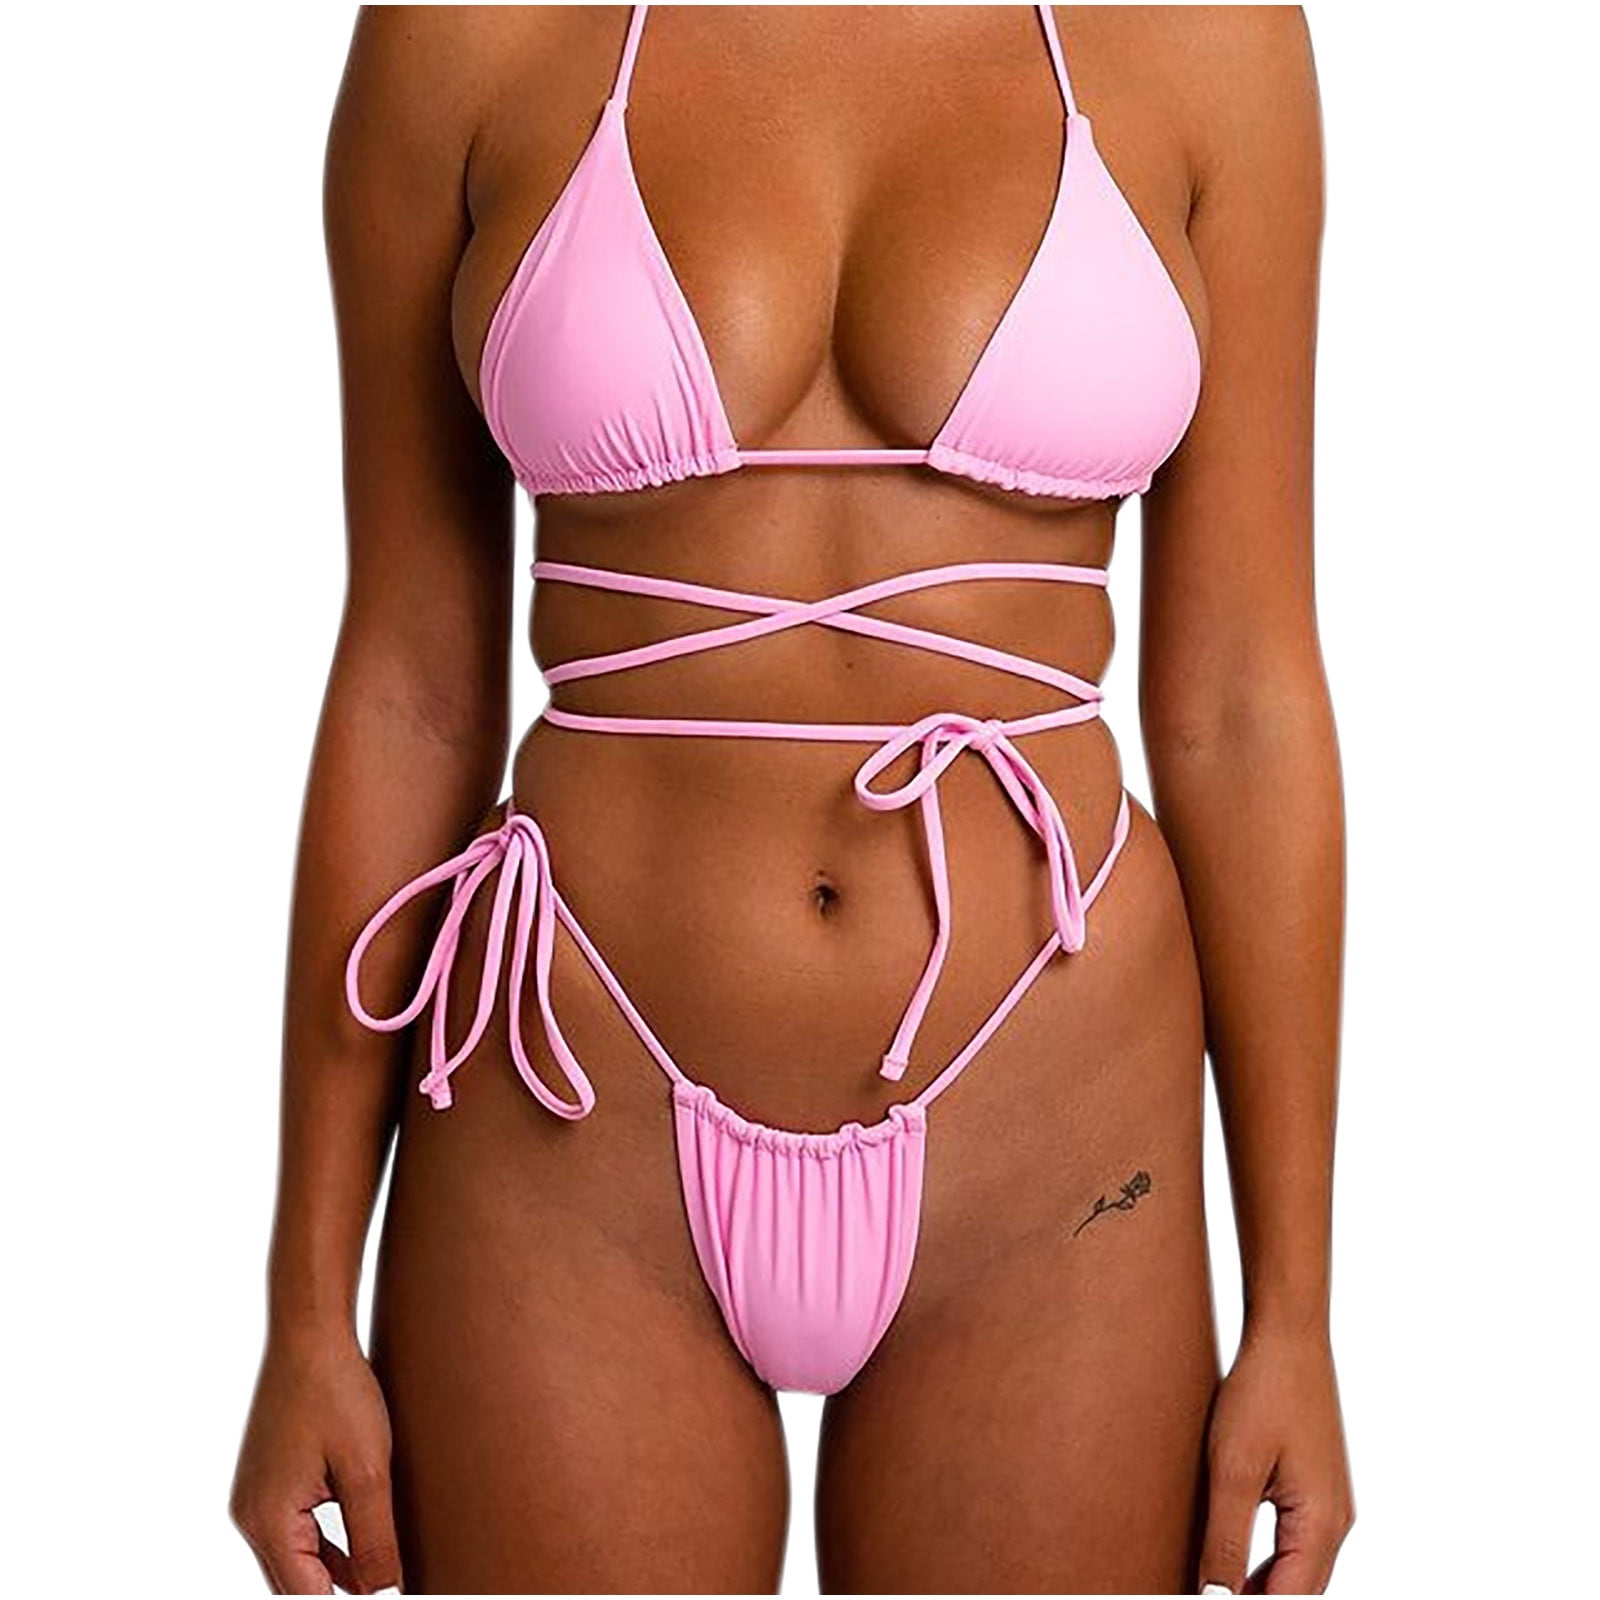 Women's Neon Open Strap Bikini Swimwear Padded Top Bathing Suit Swimsuit S-XL US 